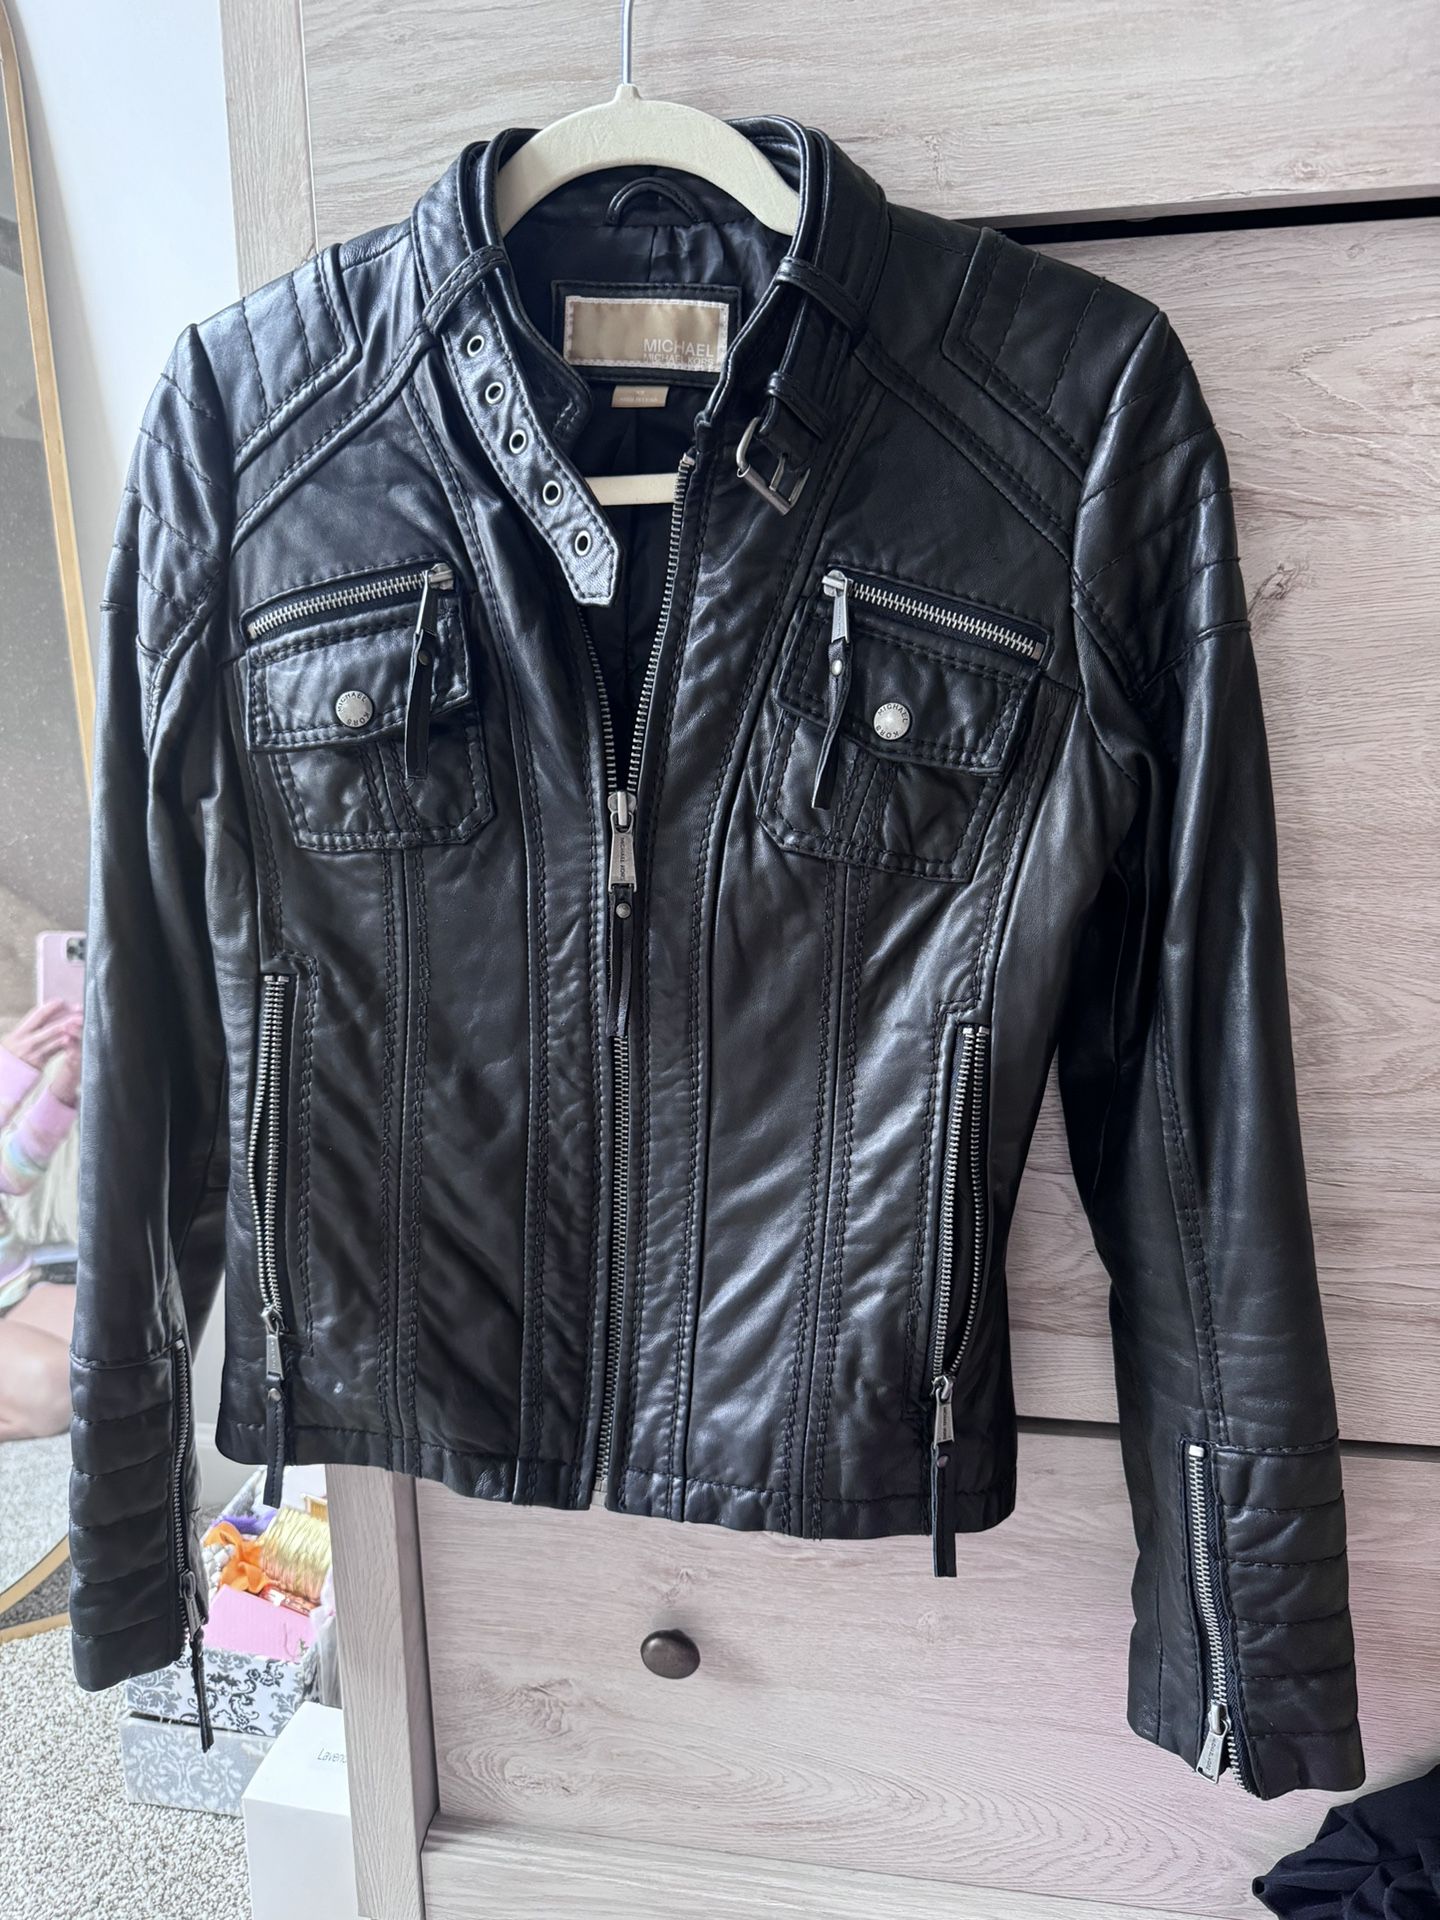 Designer Michael Kors leather Jacket